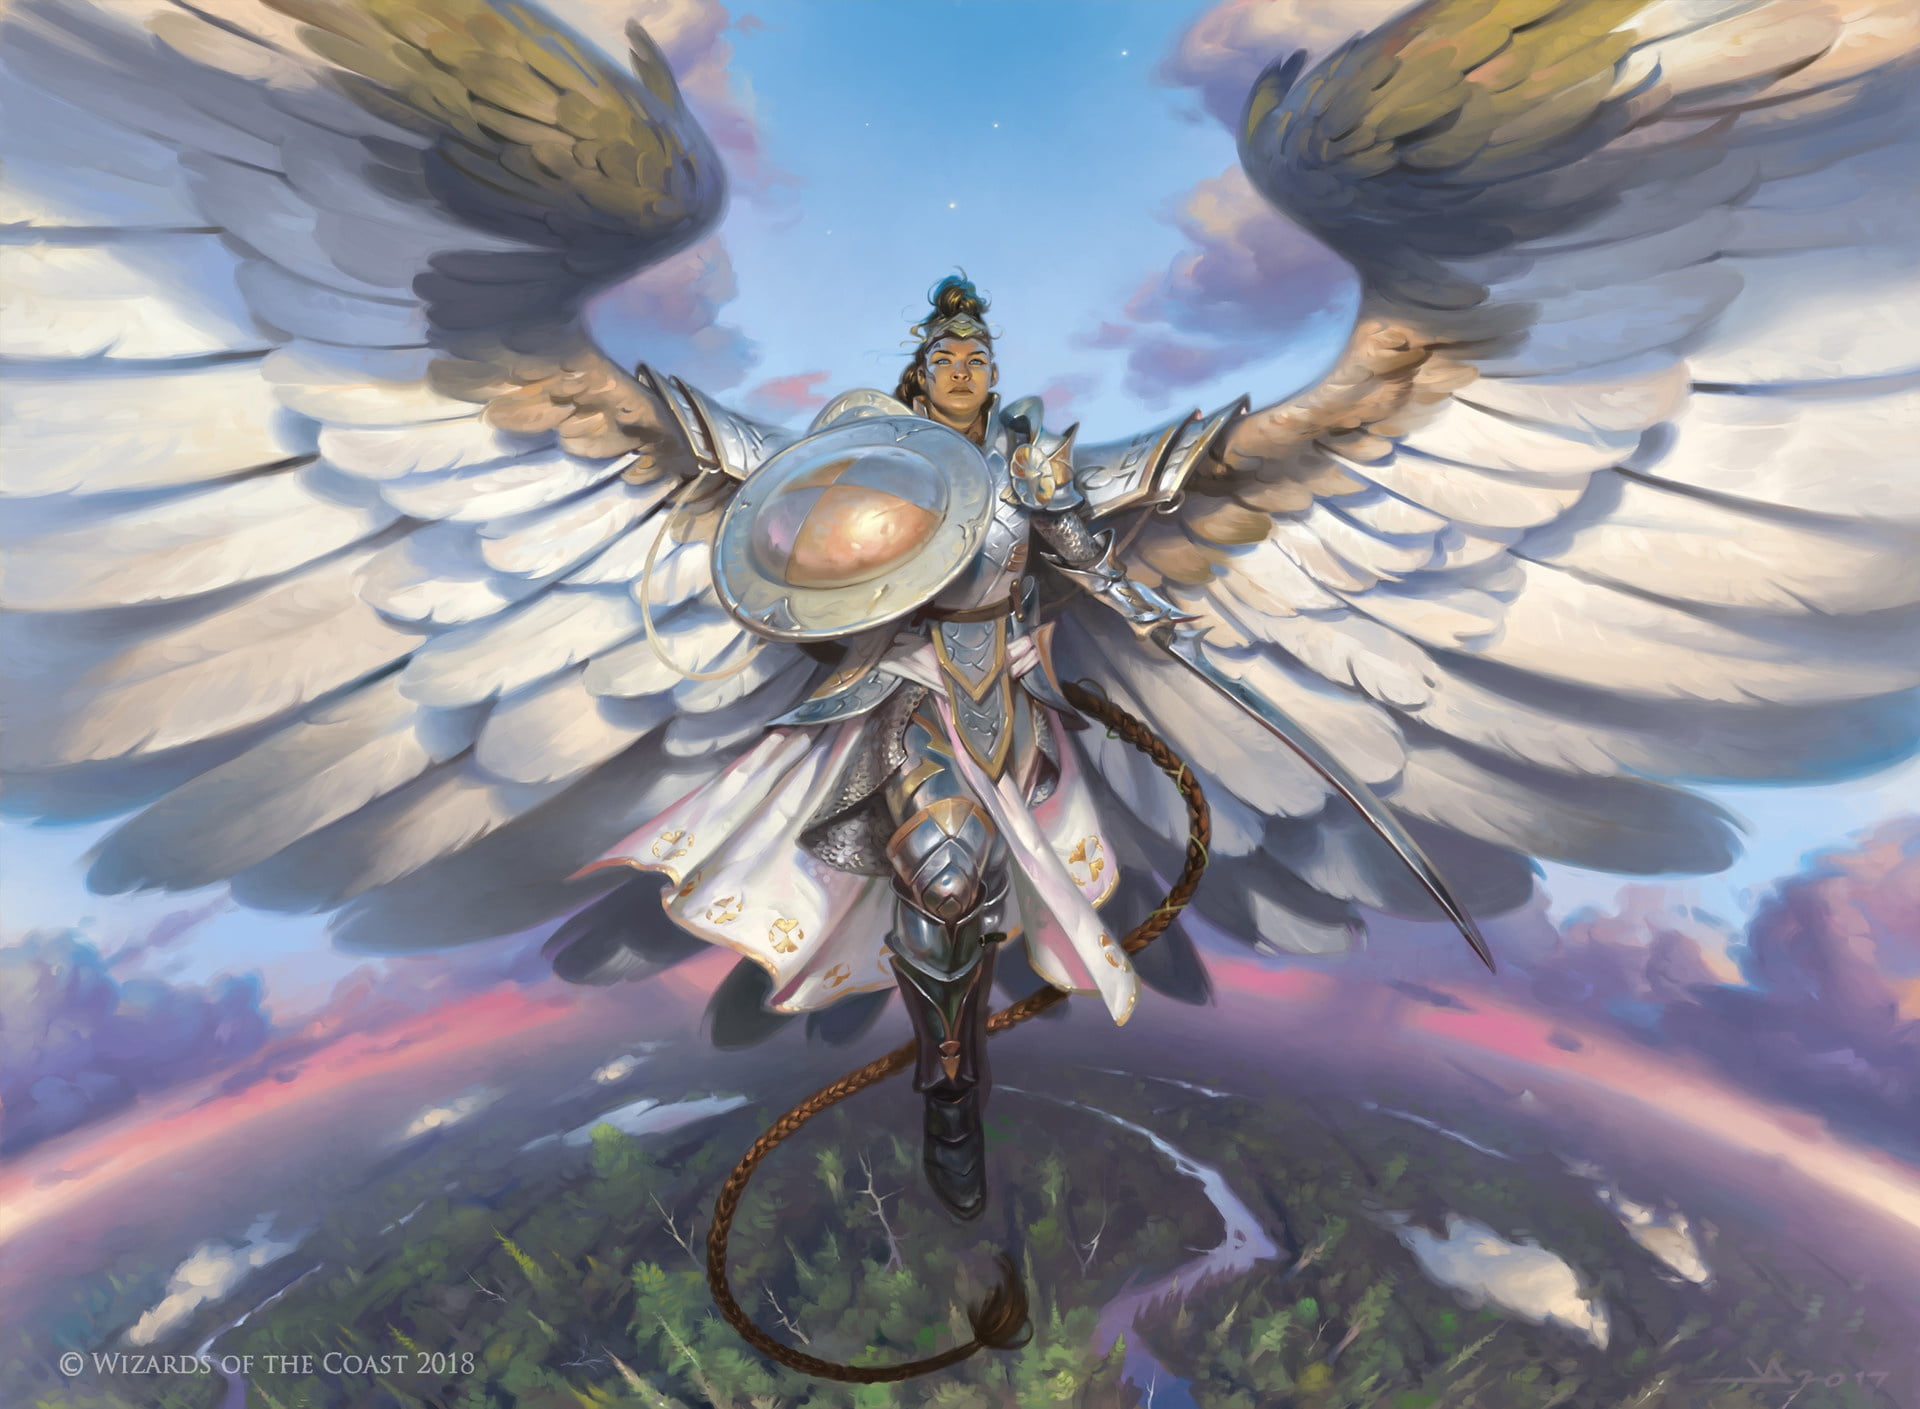 wings, sword, armor, horizon, helmet, braid, shield, art, in the sky